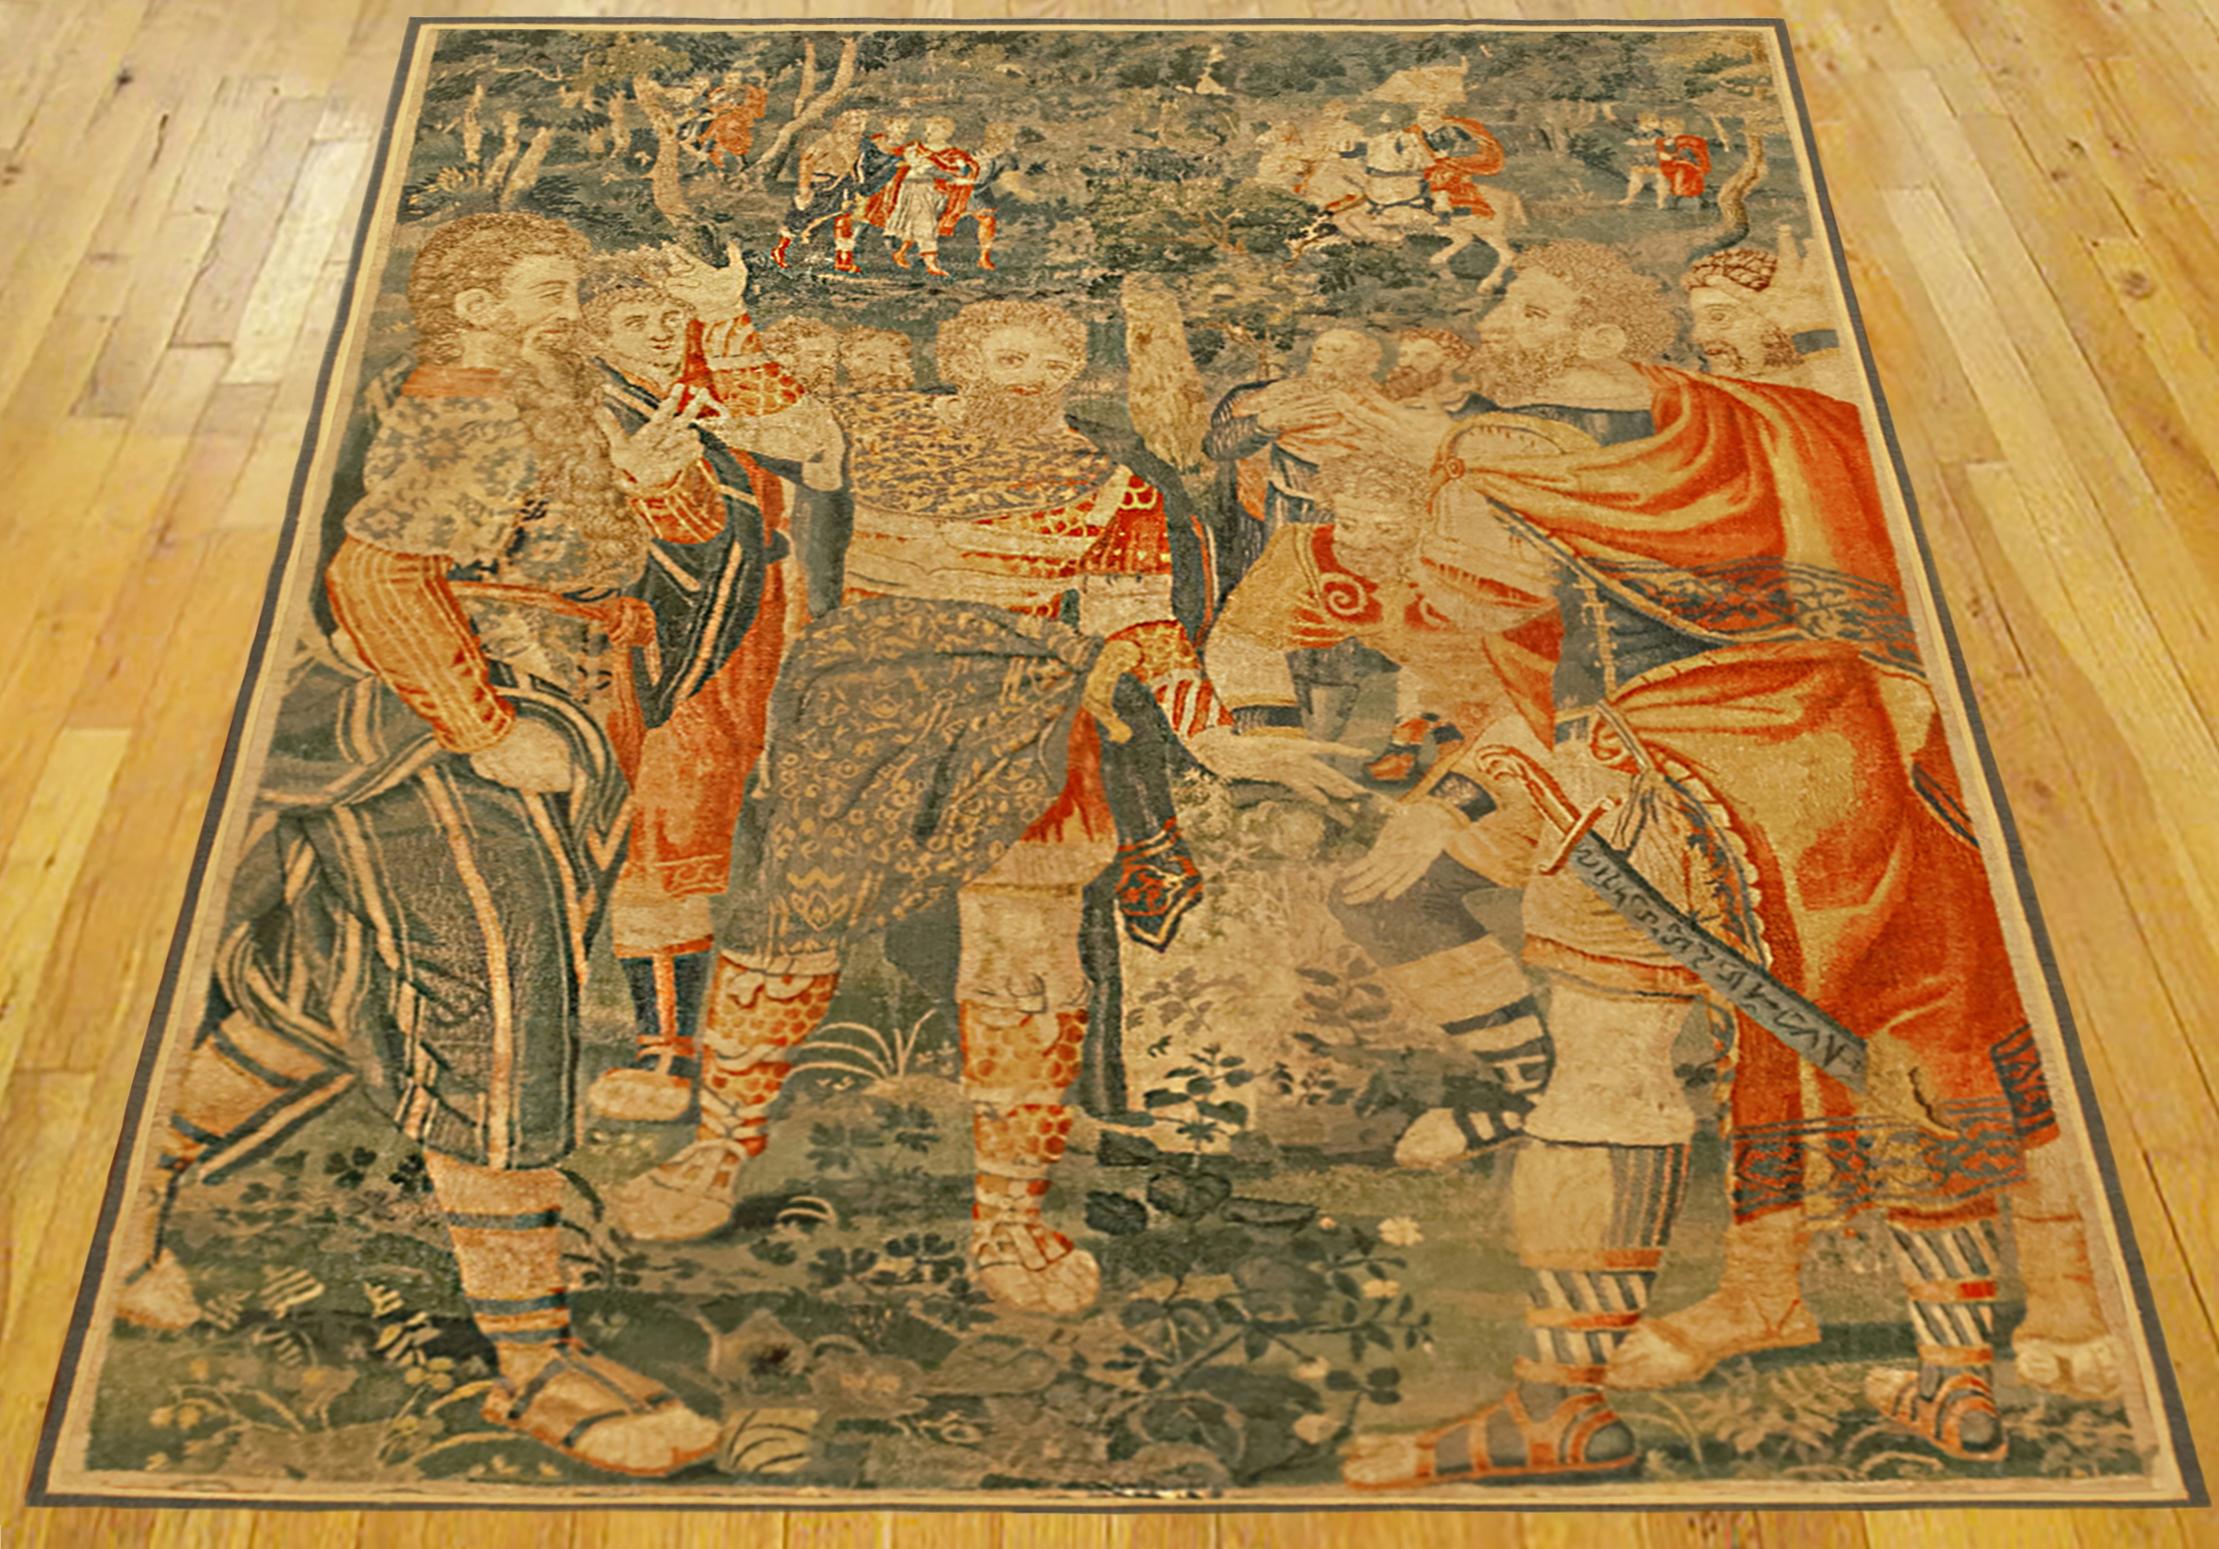 Tapisserie historique bruxelloise de la fin du XVIe siècle, représentant au premier plan plusieurs personnages armés sur le point d'engager le combat, tandis que d'autres personnages à cheval se rapprochent au loin, dans un décor de forêt boisée.